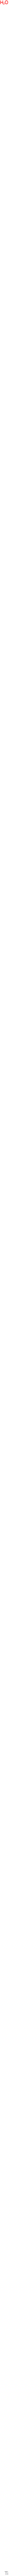 trititanium pentoxide